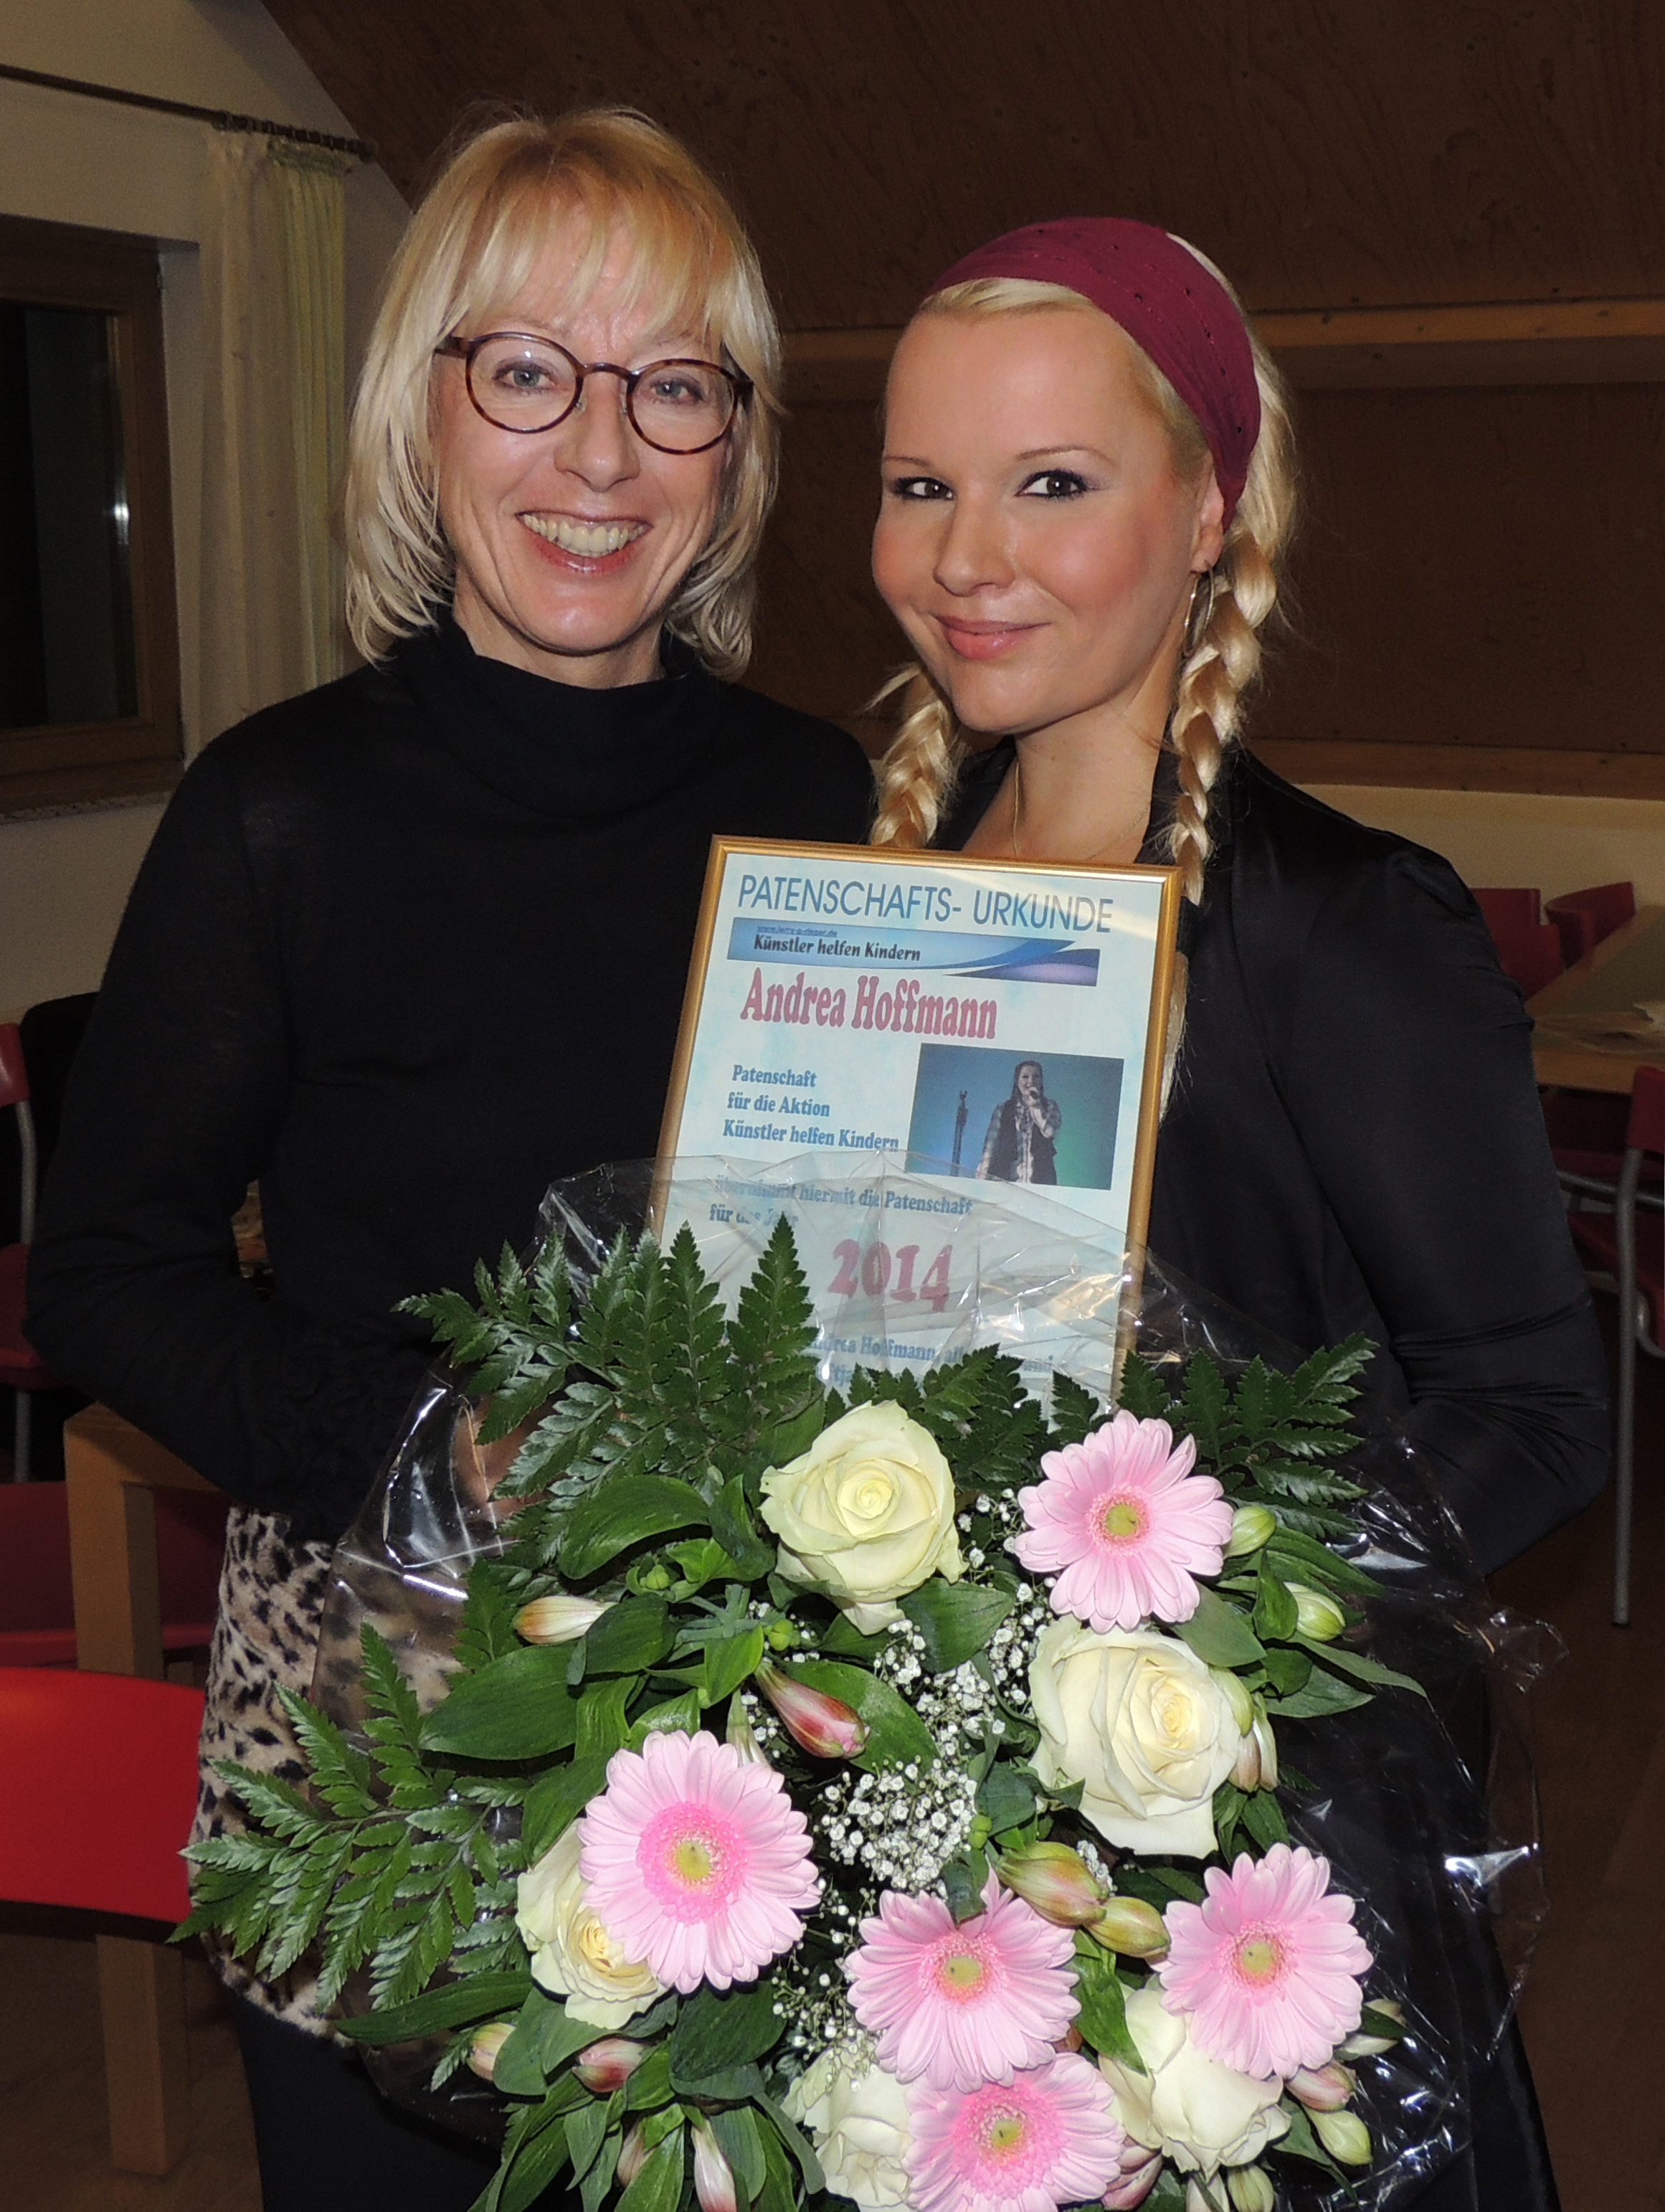 KÖLN: Bürgermeisterin Frau E. Scho-Antwerpes mit Andrea Hoffmann, Patin 2014 für die Aktion "Künstler helfen Kindern"